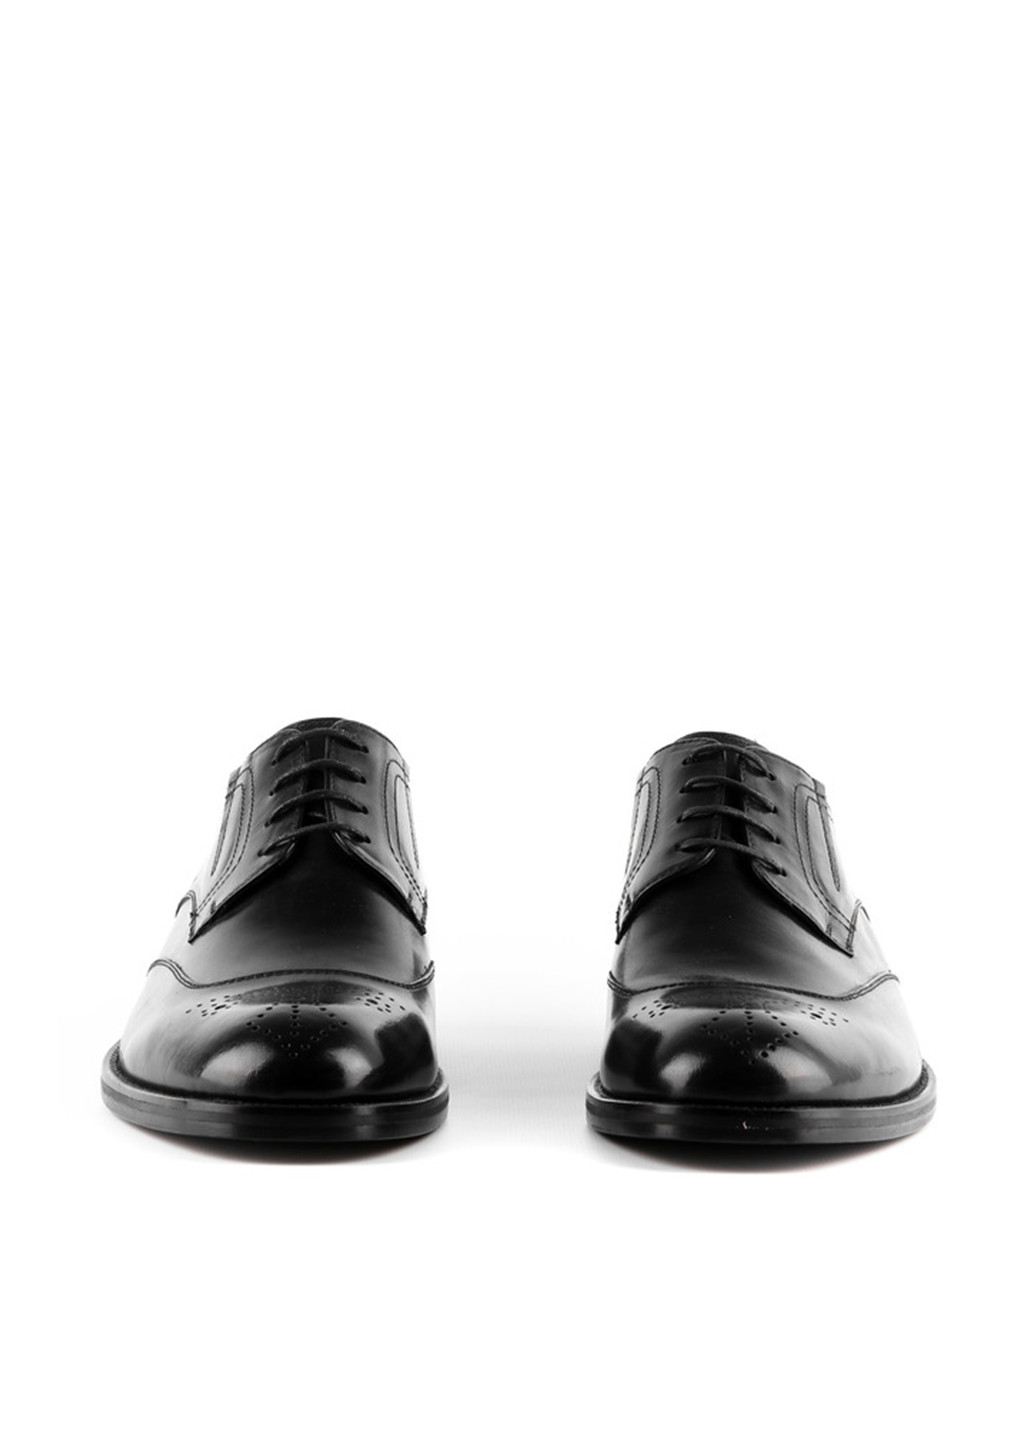 Черные классические туфли Le'BERDES на шнурках